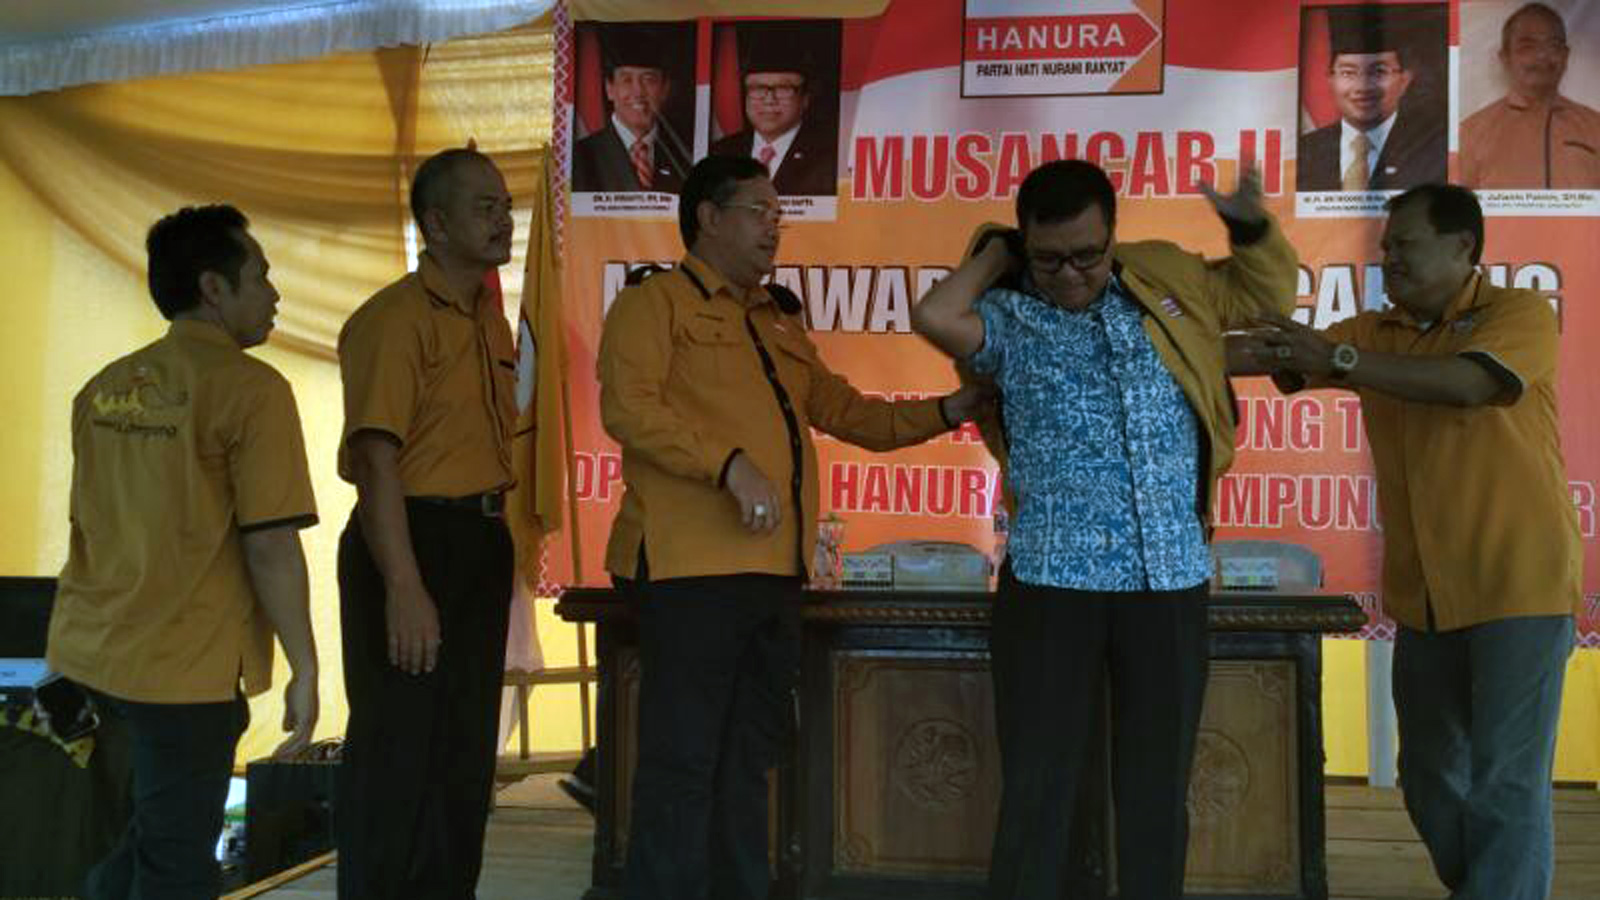 Ketua DPD Hanura Lampung Sri Widodo memakaikan jaket kepada Taufik Hidayat, salah satu tokoh masyarakat setempat yang bergabung ke Partai Hanura, pada acara Musancab bersama PAC Hanura se Lamtim, Minggu (16/4). (Ist)